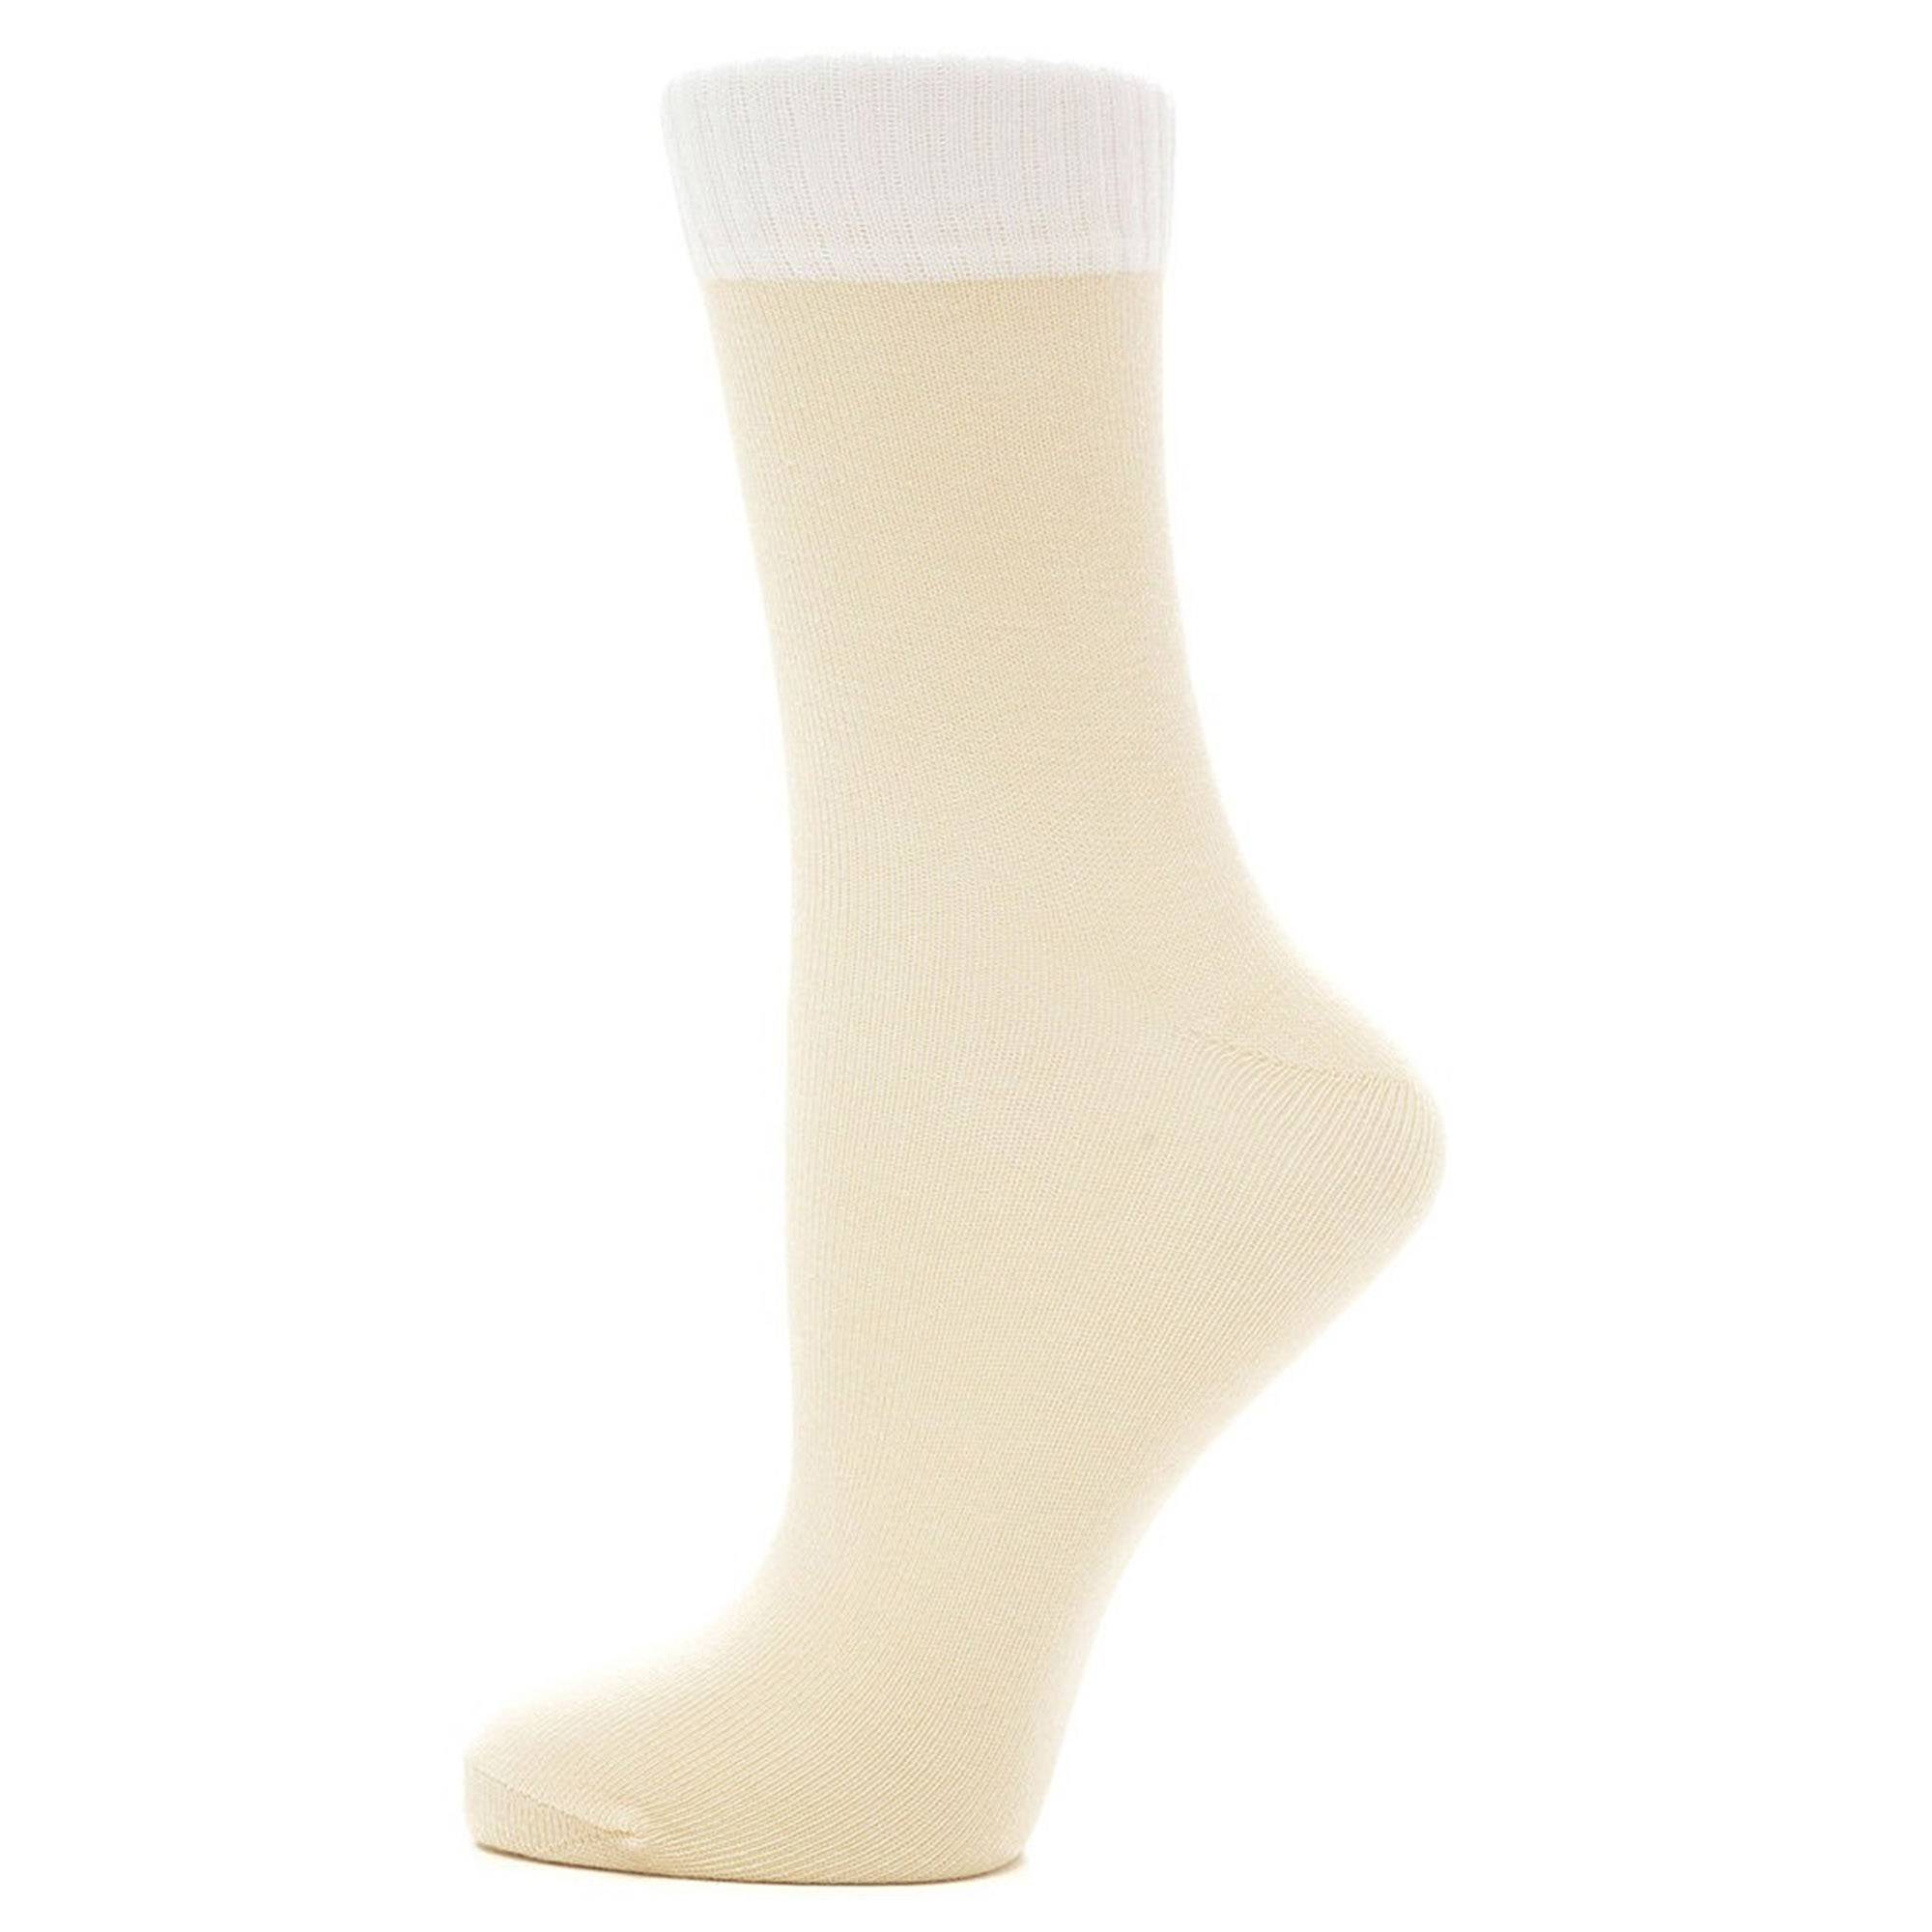 Носки Karmen Calza Look beige M 38-40, цвет бежевый, размер 38-40 - фото 1